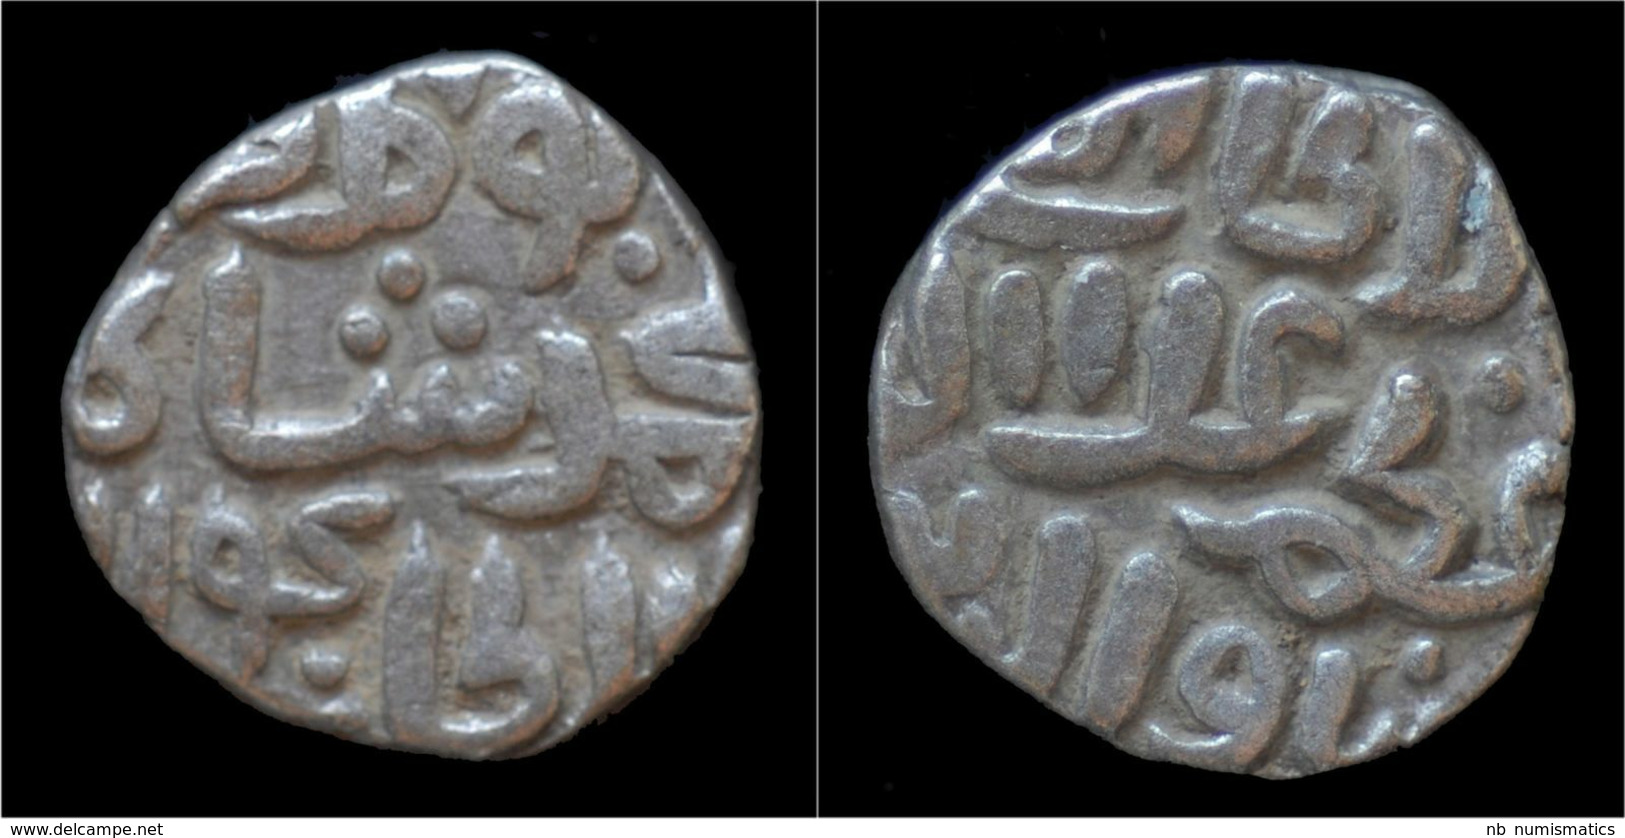 India Delhi Sultanats Ghiyath Al-Din AR Jital (four Gani) - Indian